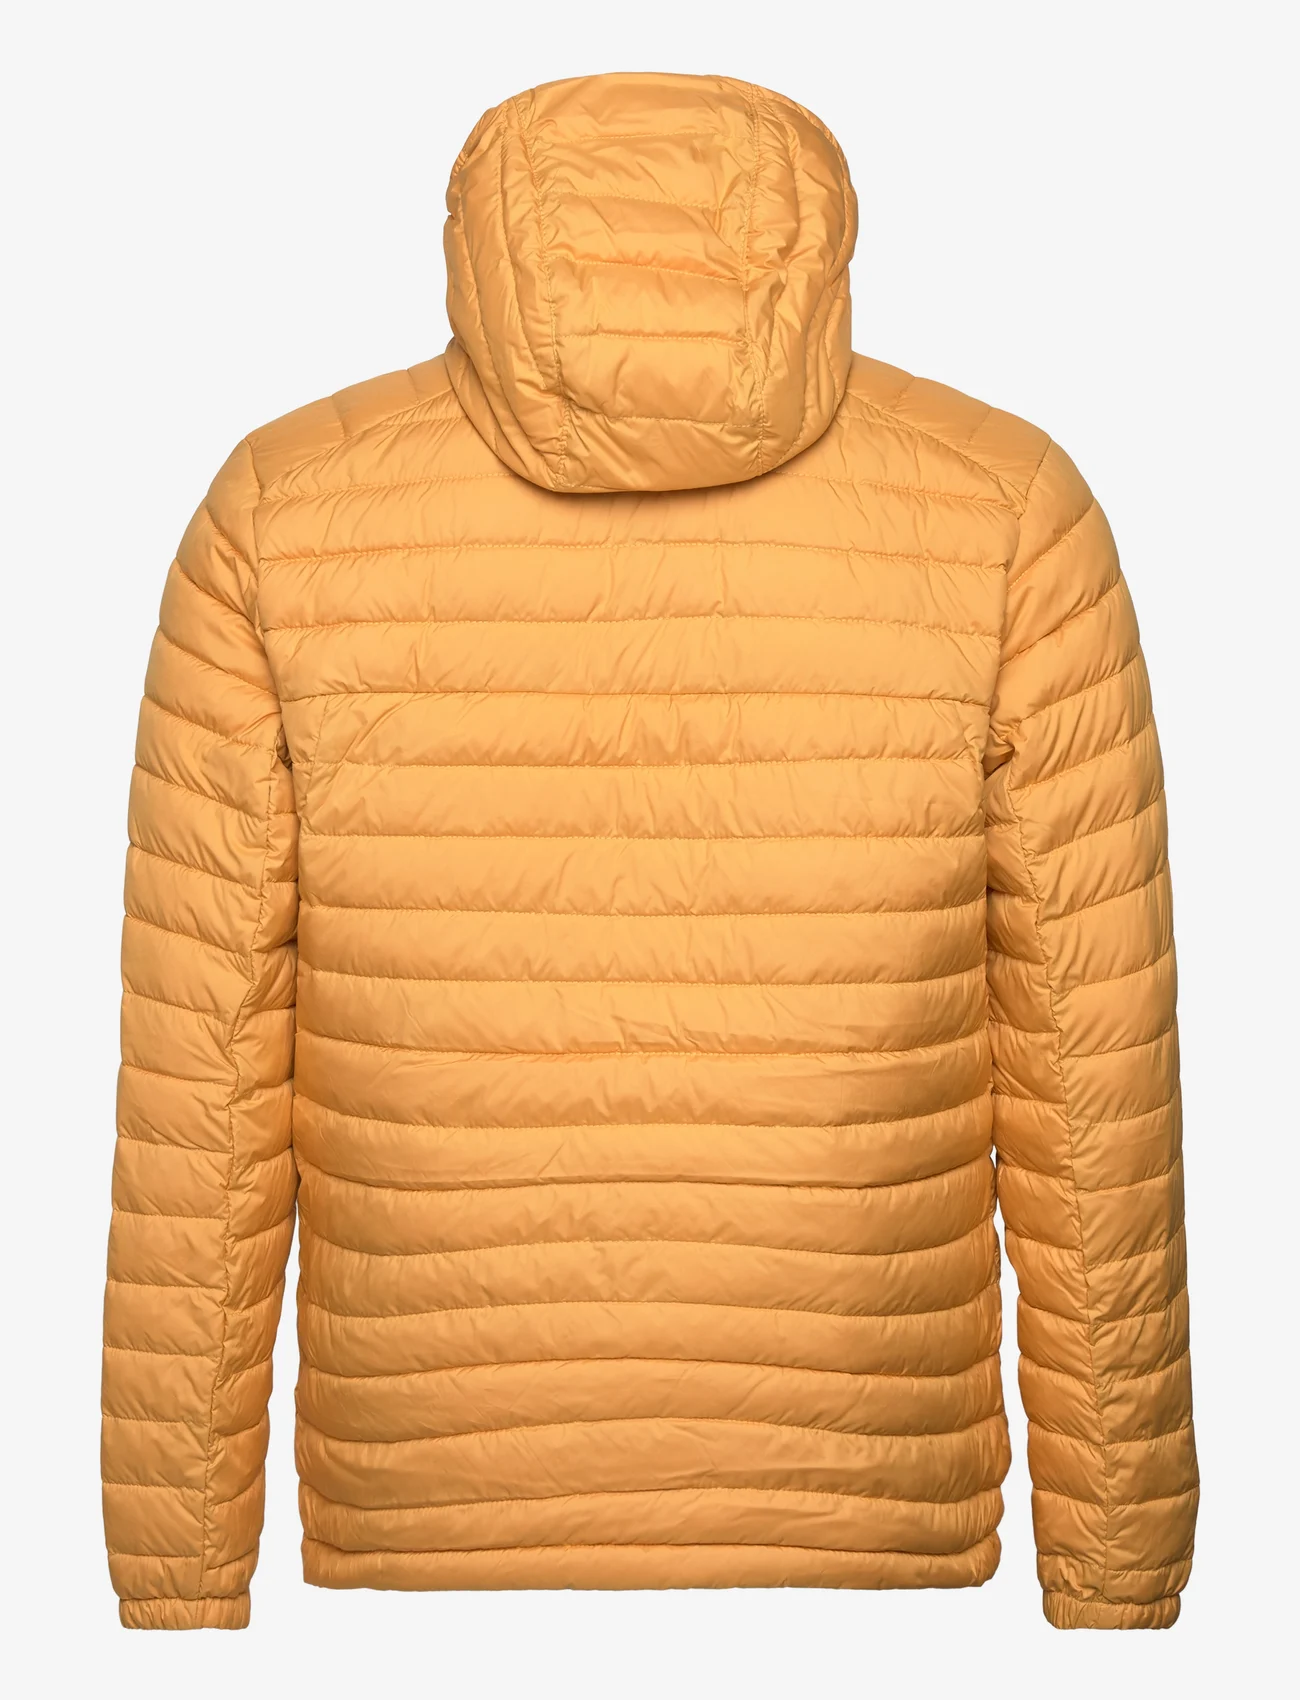 Columbia Sportswear - Silver Falls Hooded Jacket - vinterjakker - raw honey - 1